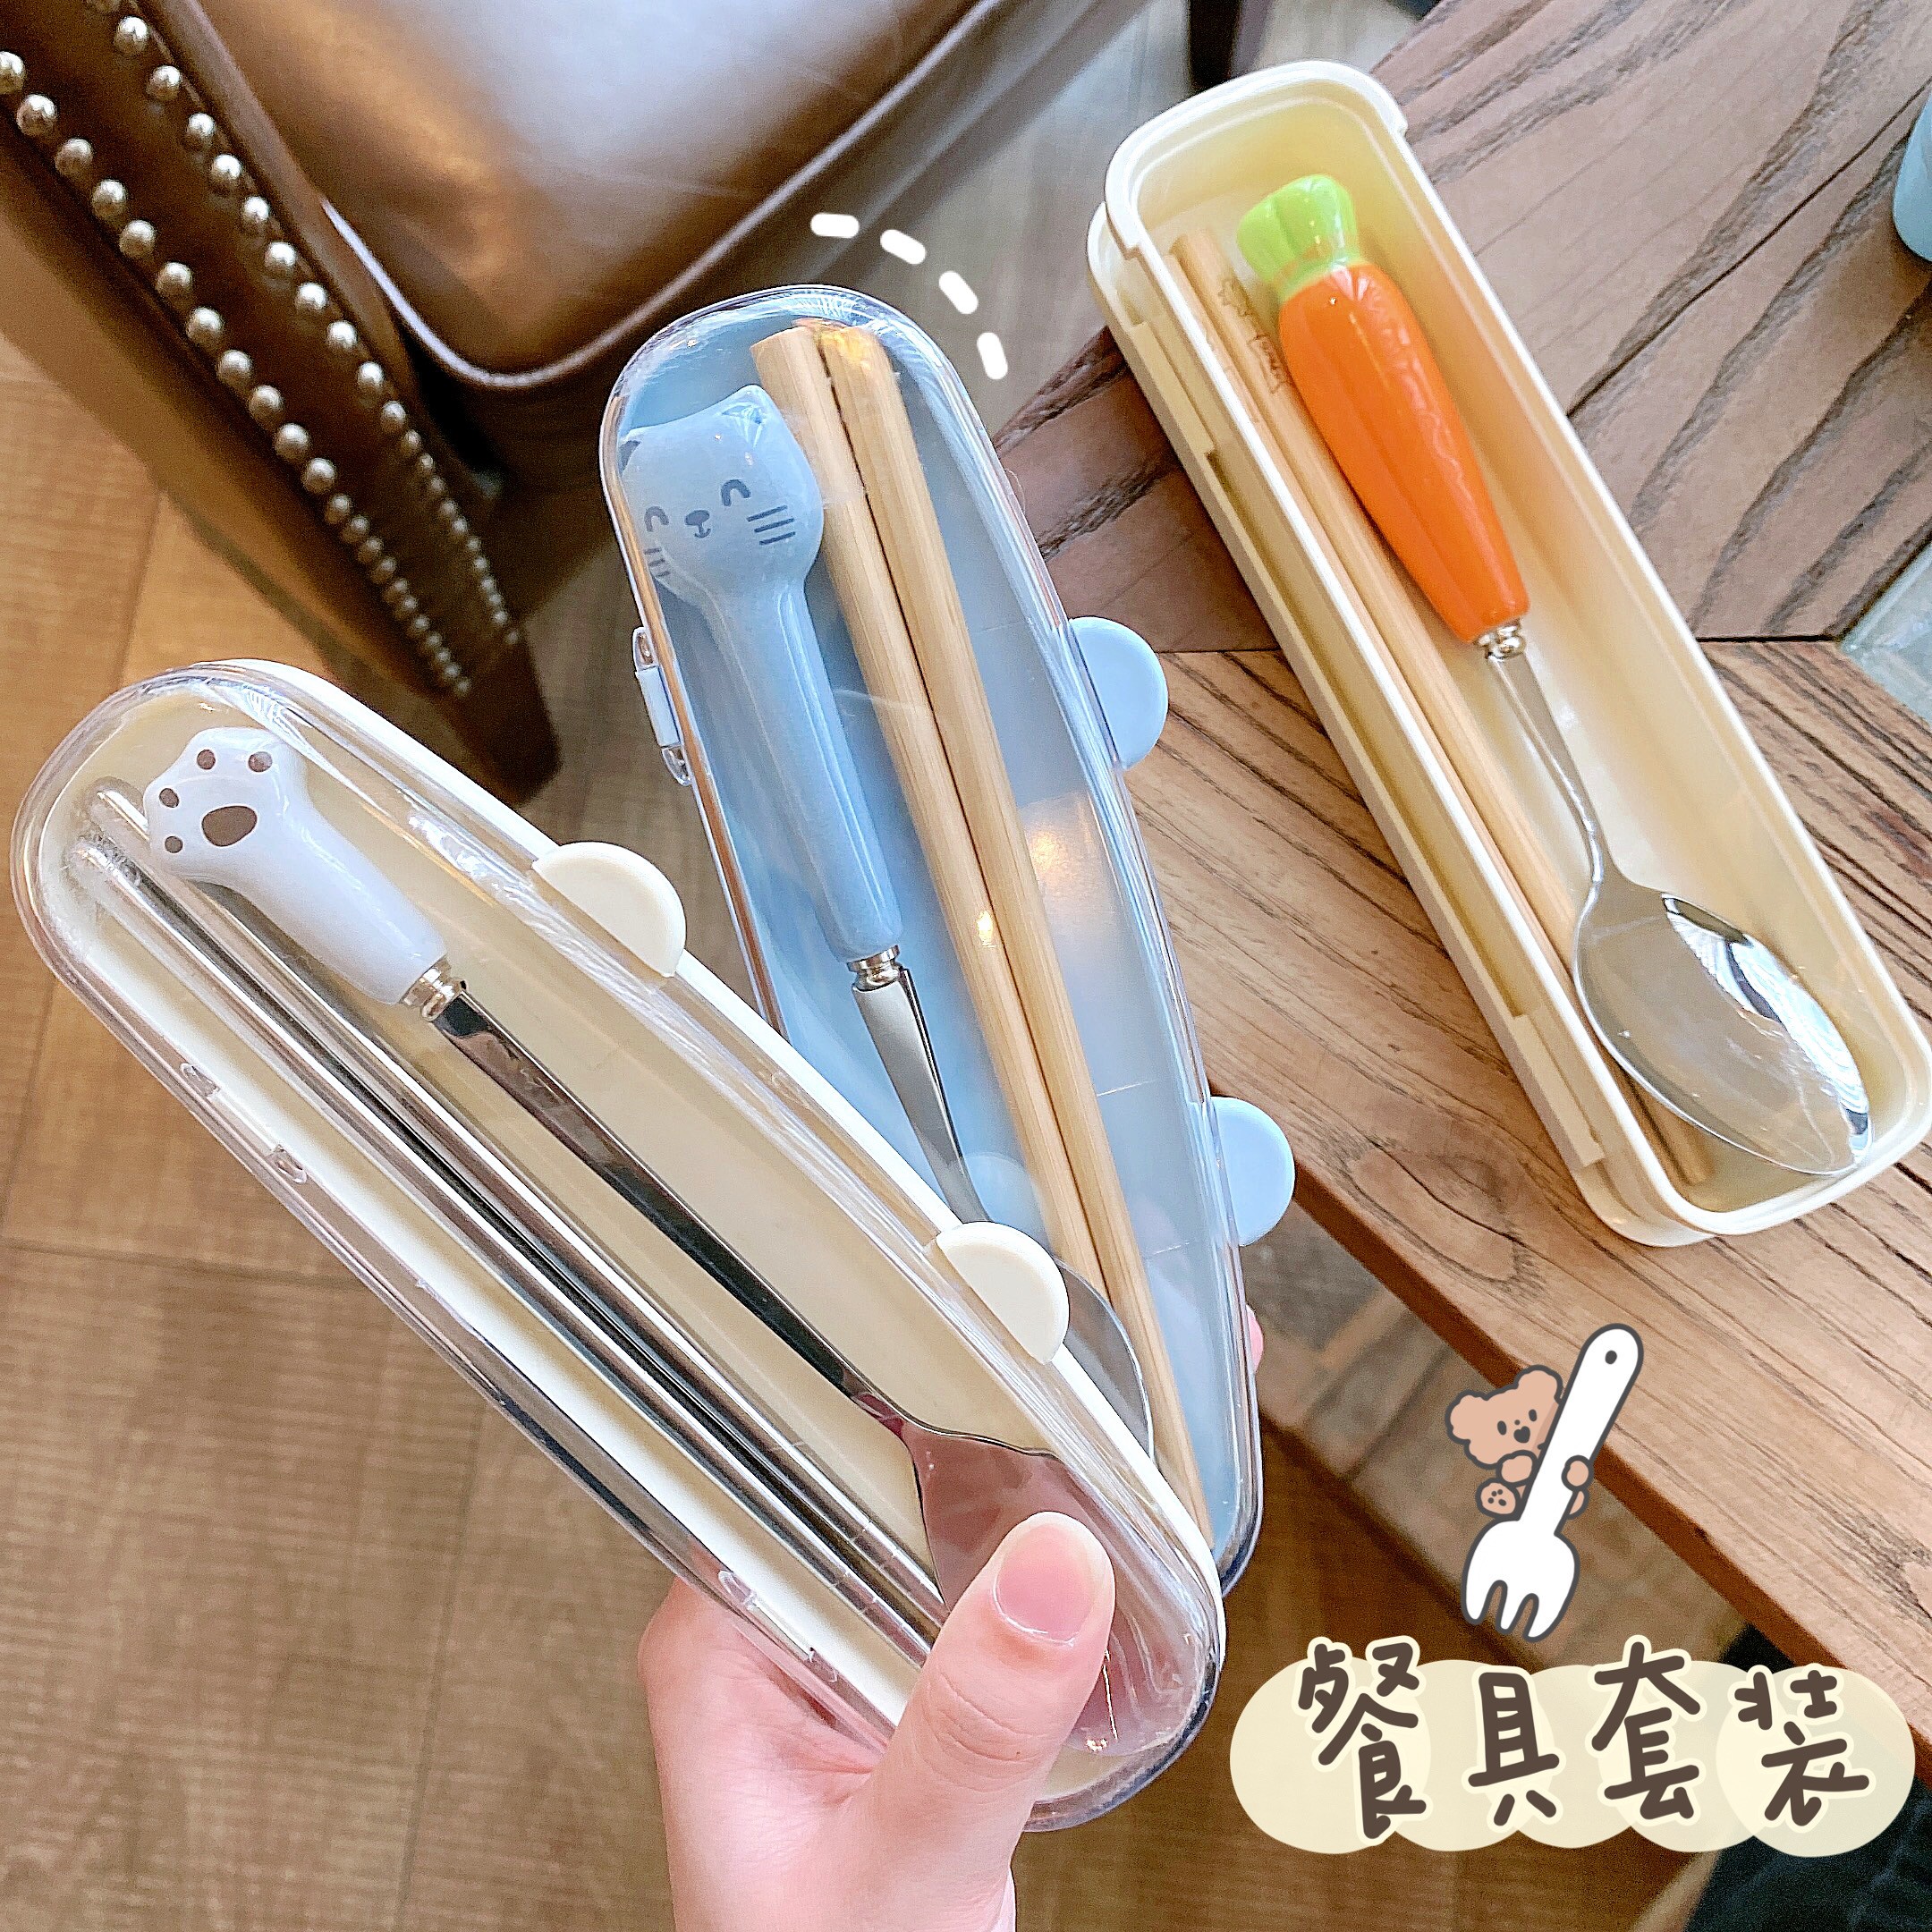 创意筷子不锈钢勺子餐具三件套装可爱学生便携式单人装餐具收纳盒 - 图1